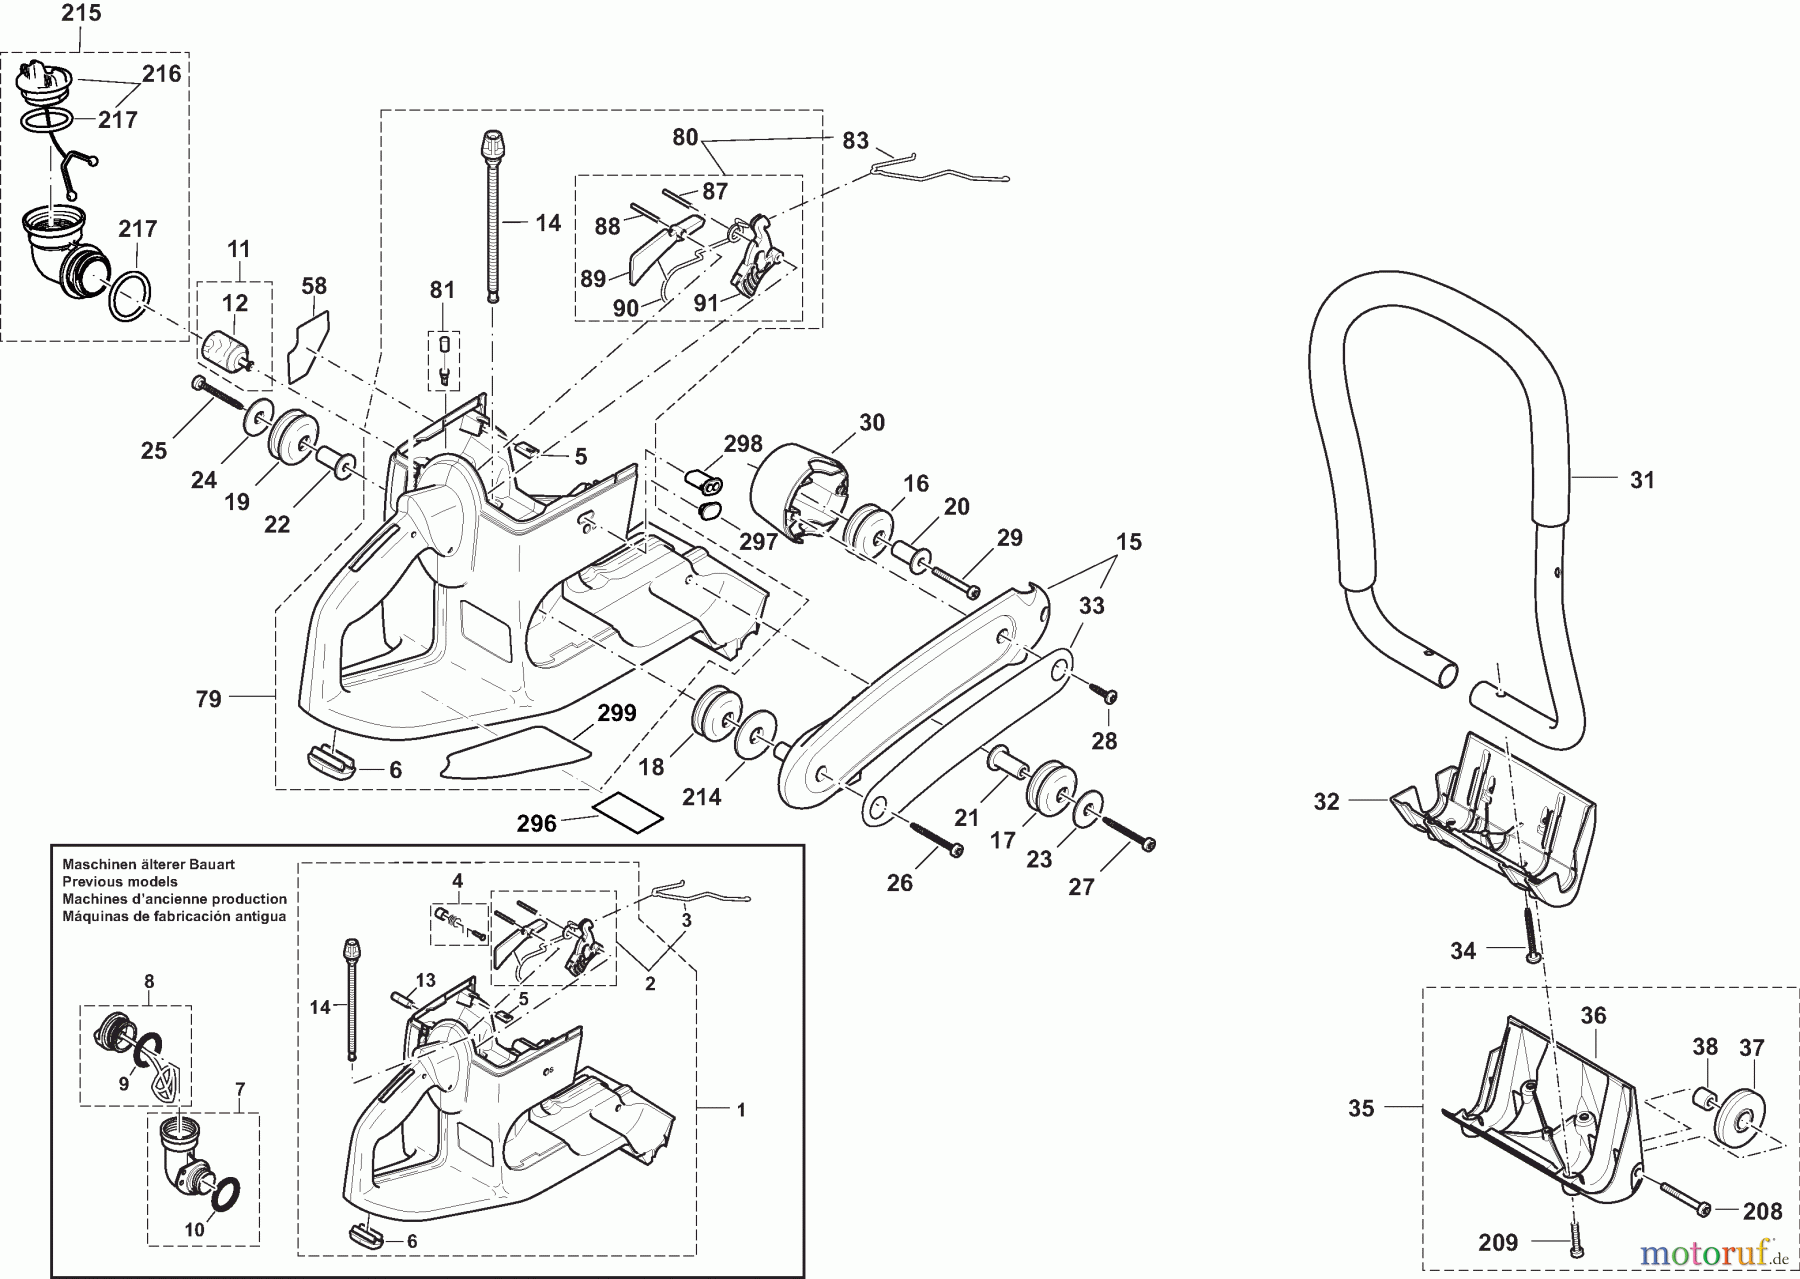  Dolmar Trennschleifer Benzin PC-7314 CD 1  Tankeinheit und Handgriffe